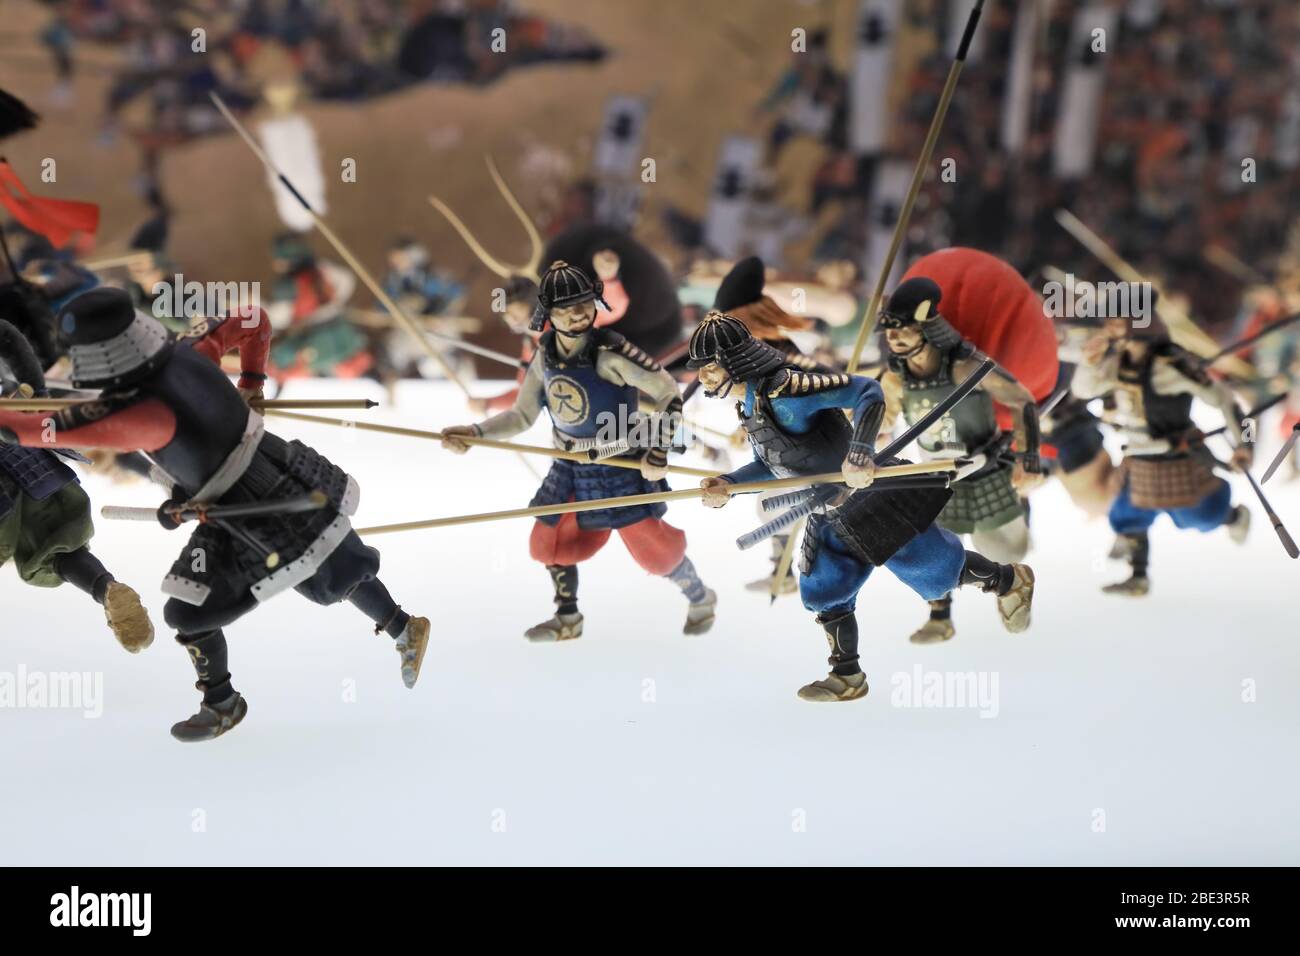 Osaka, Japan - 28 Dec 2019: Historische Installation von antikes Gefecht und Krieg in Japan mit Spielzeugfiguren von Kriegern. Stockfoto